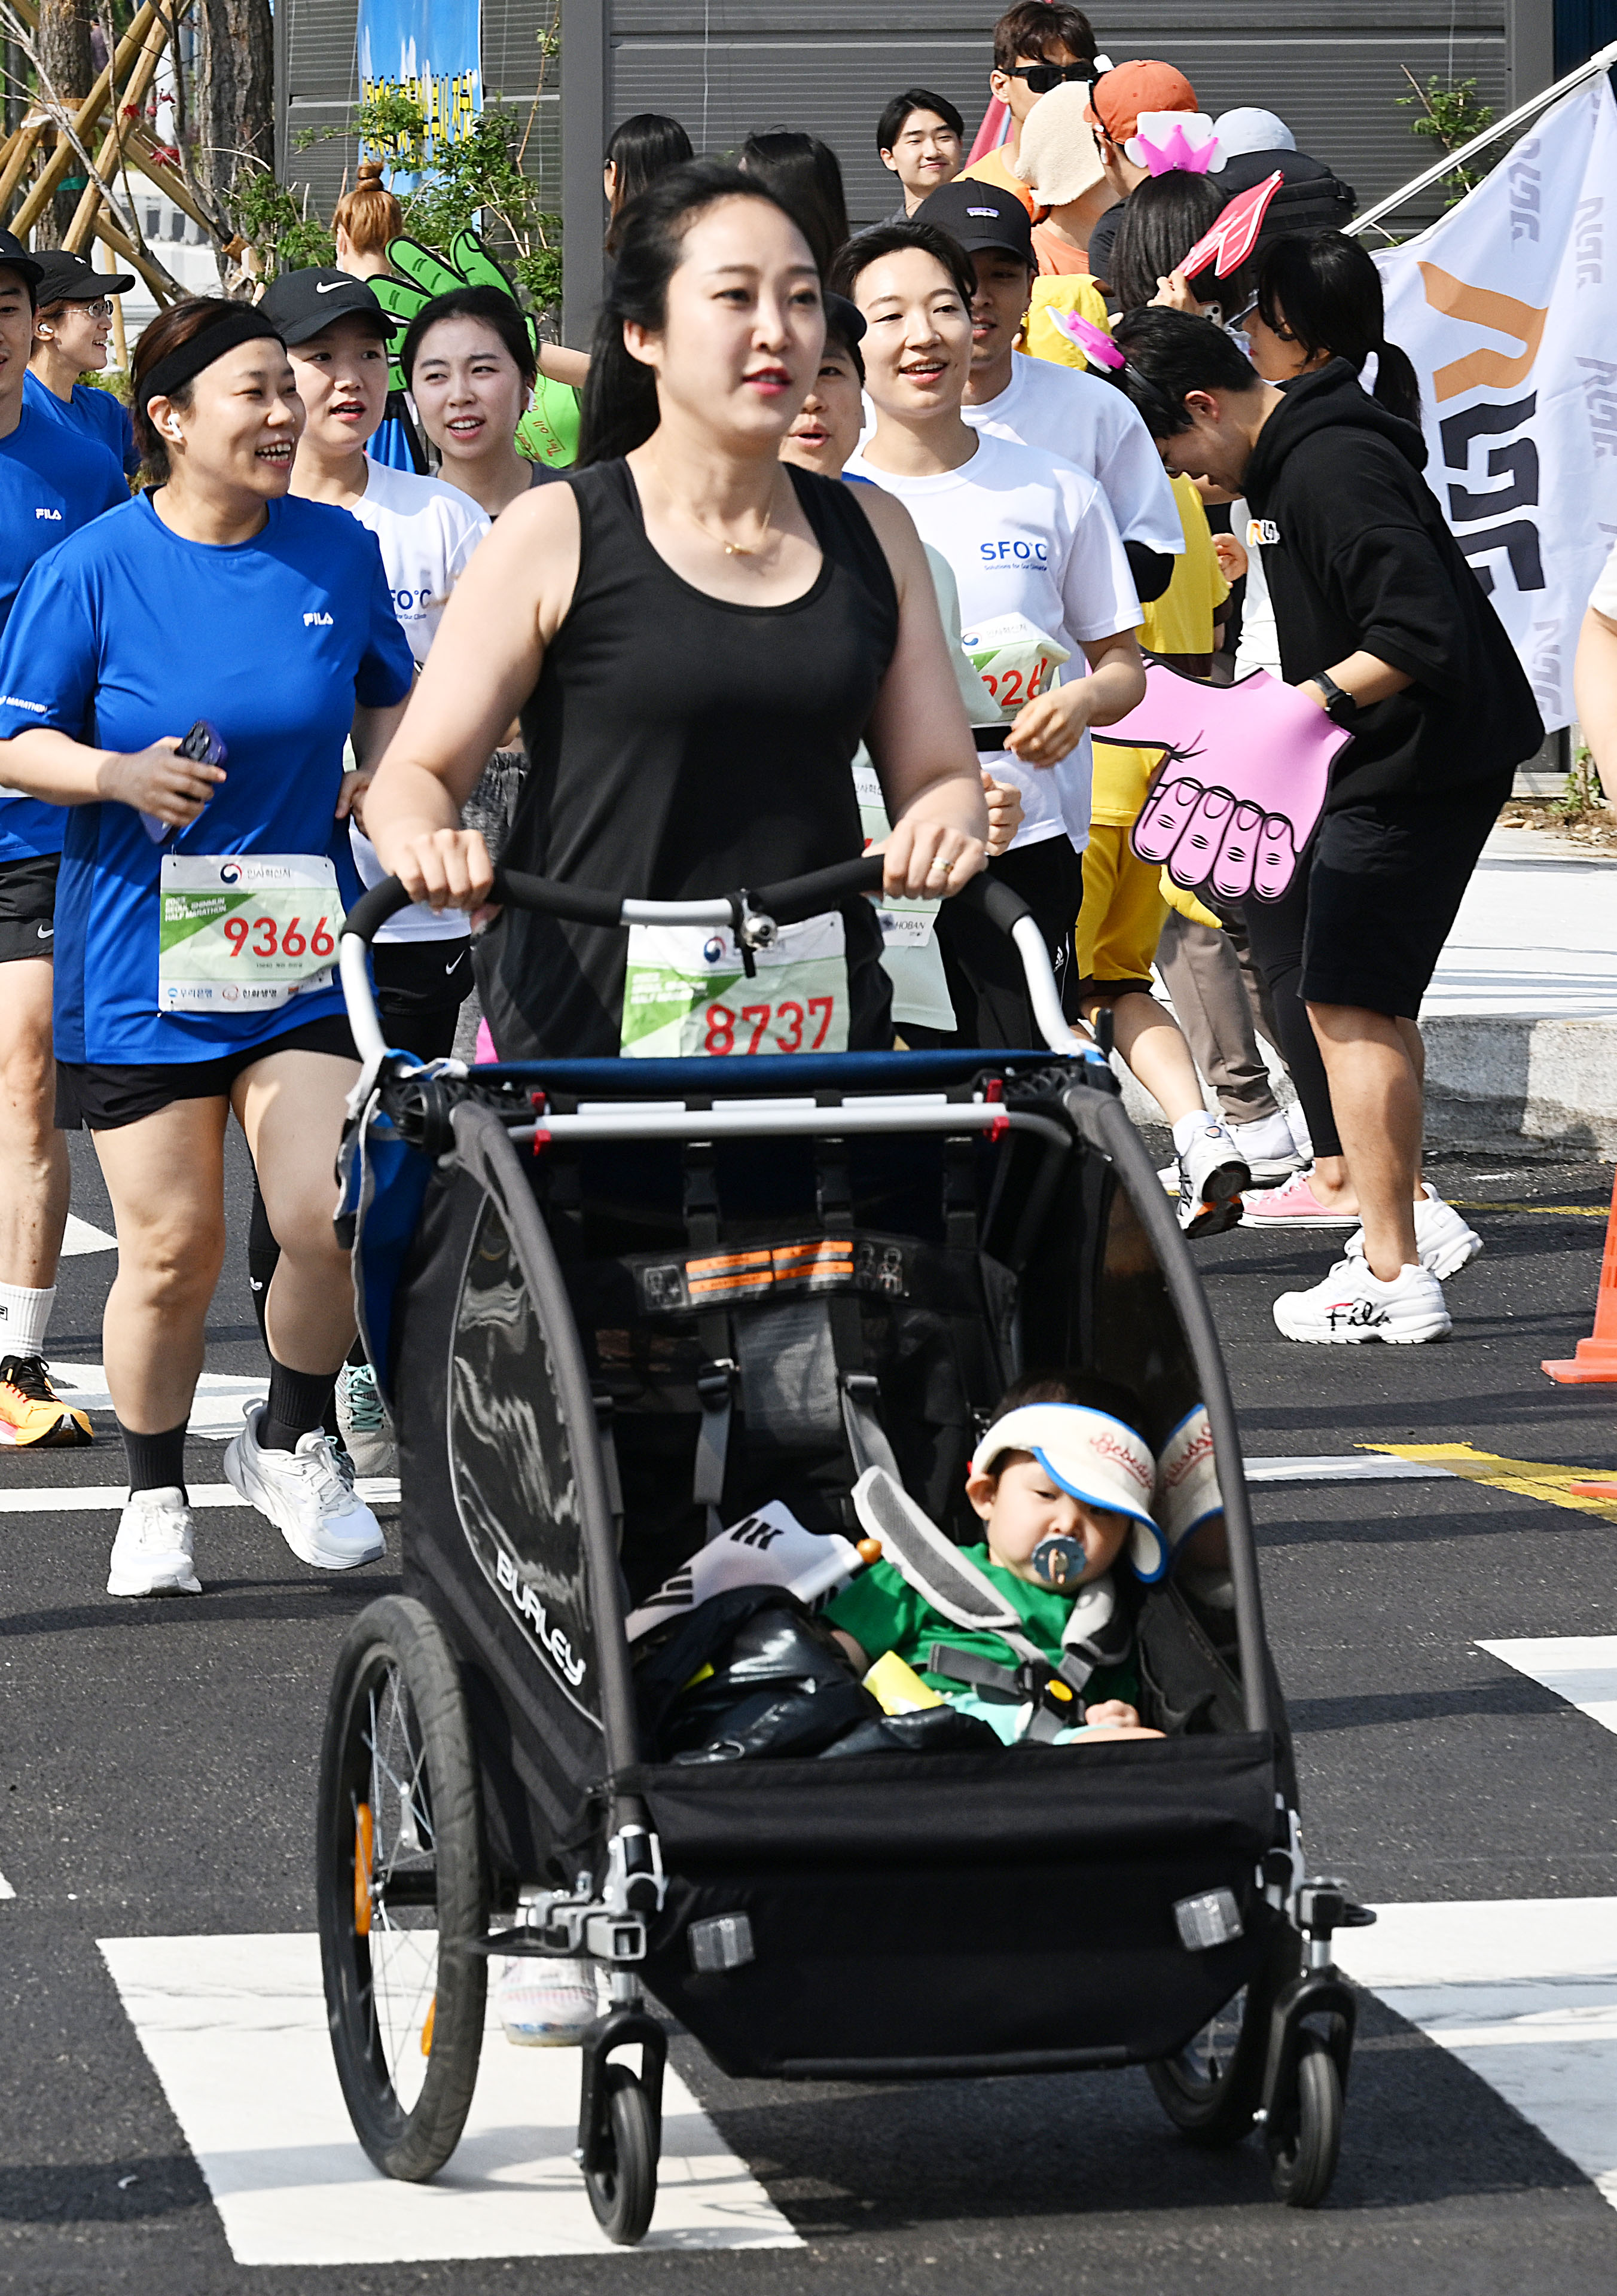 10㎞ 코스에 참가한 김현정씨가 유아차에 태운 아들과 함께 달리고 있다. 김씨는 완주 소감에서 “엄마들은 다 할 수 있다”고 외쳤다.